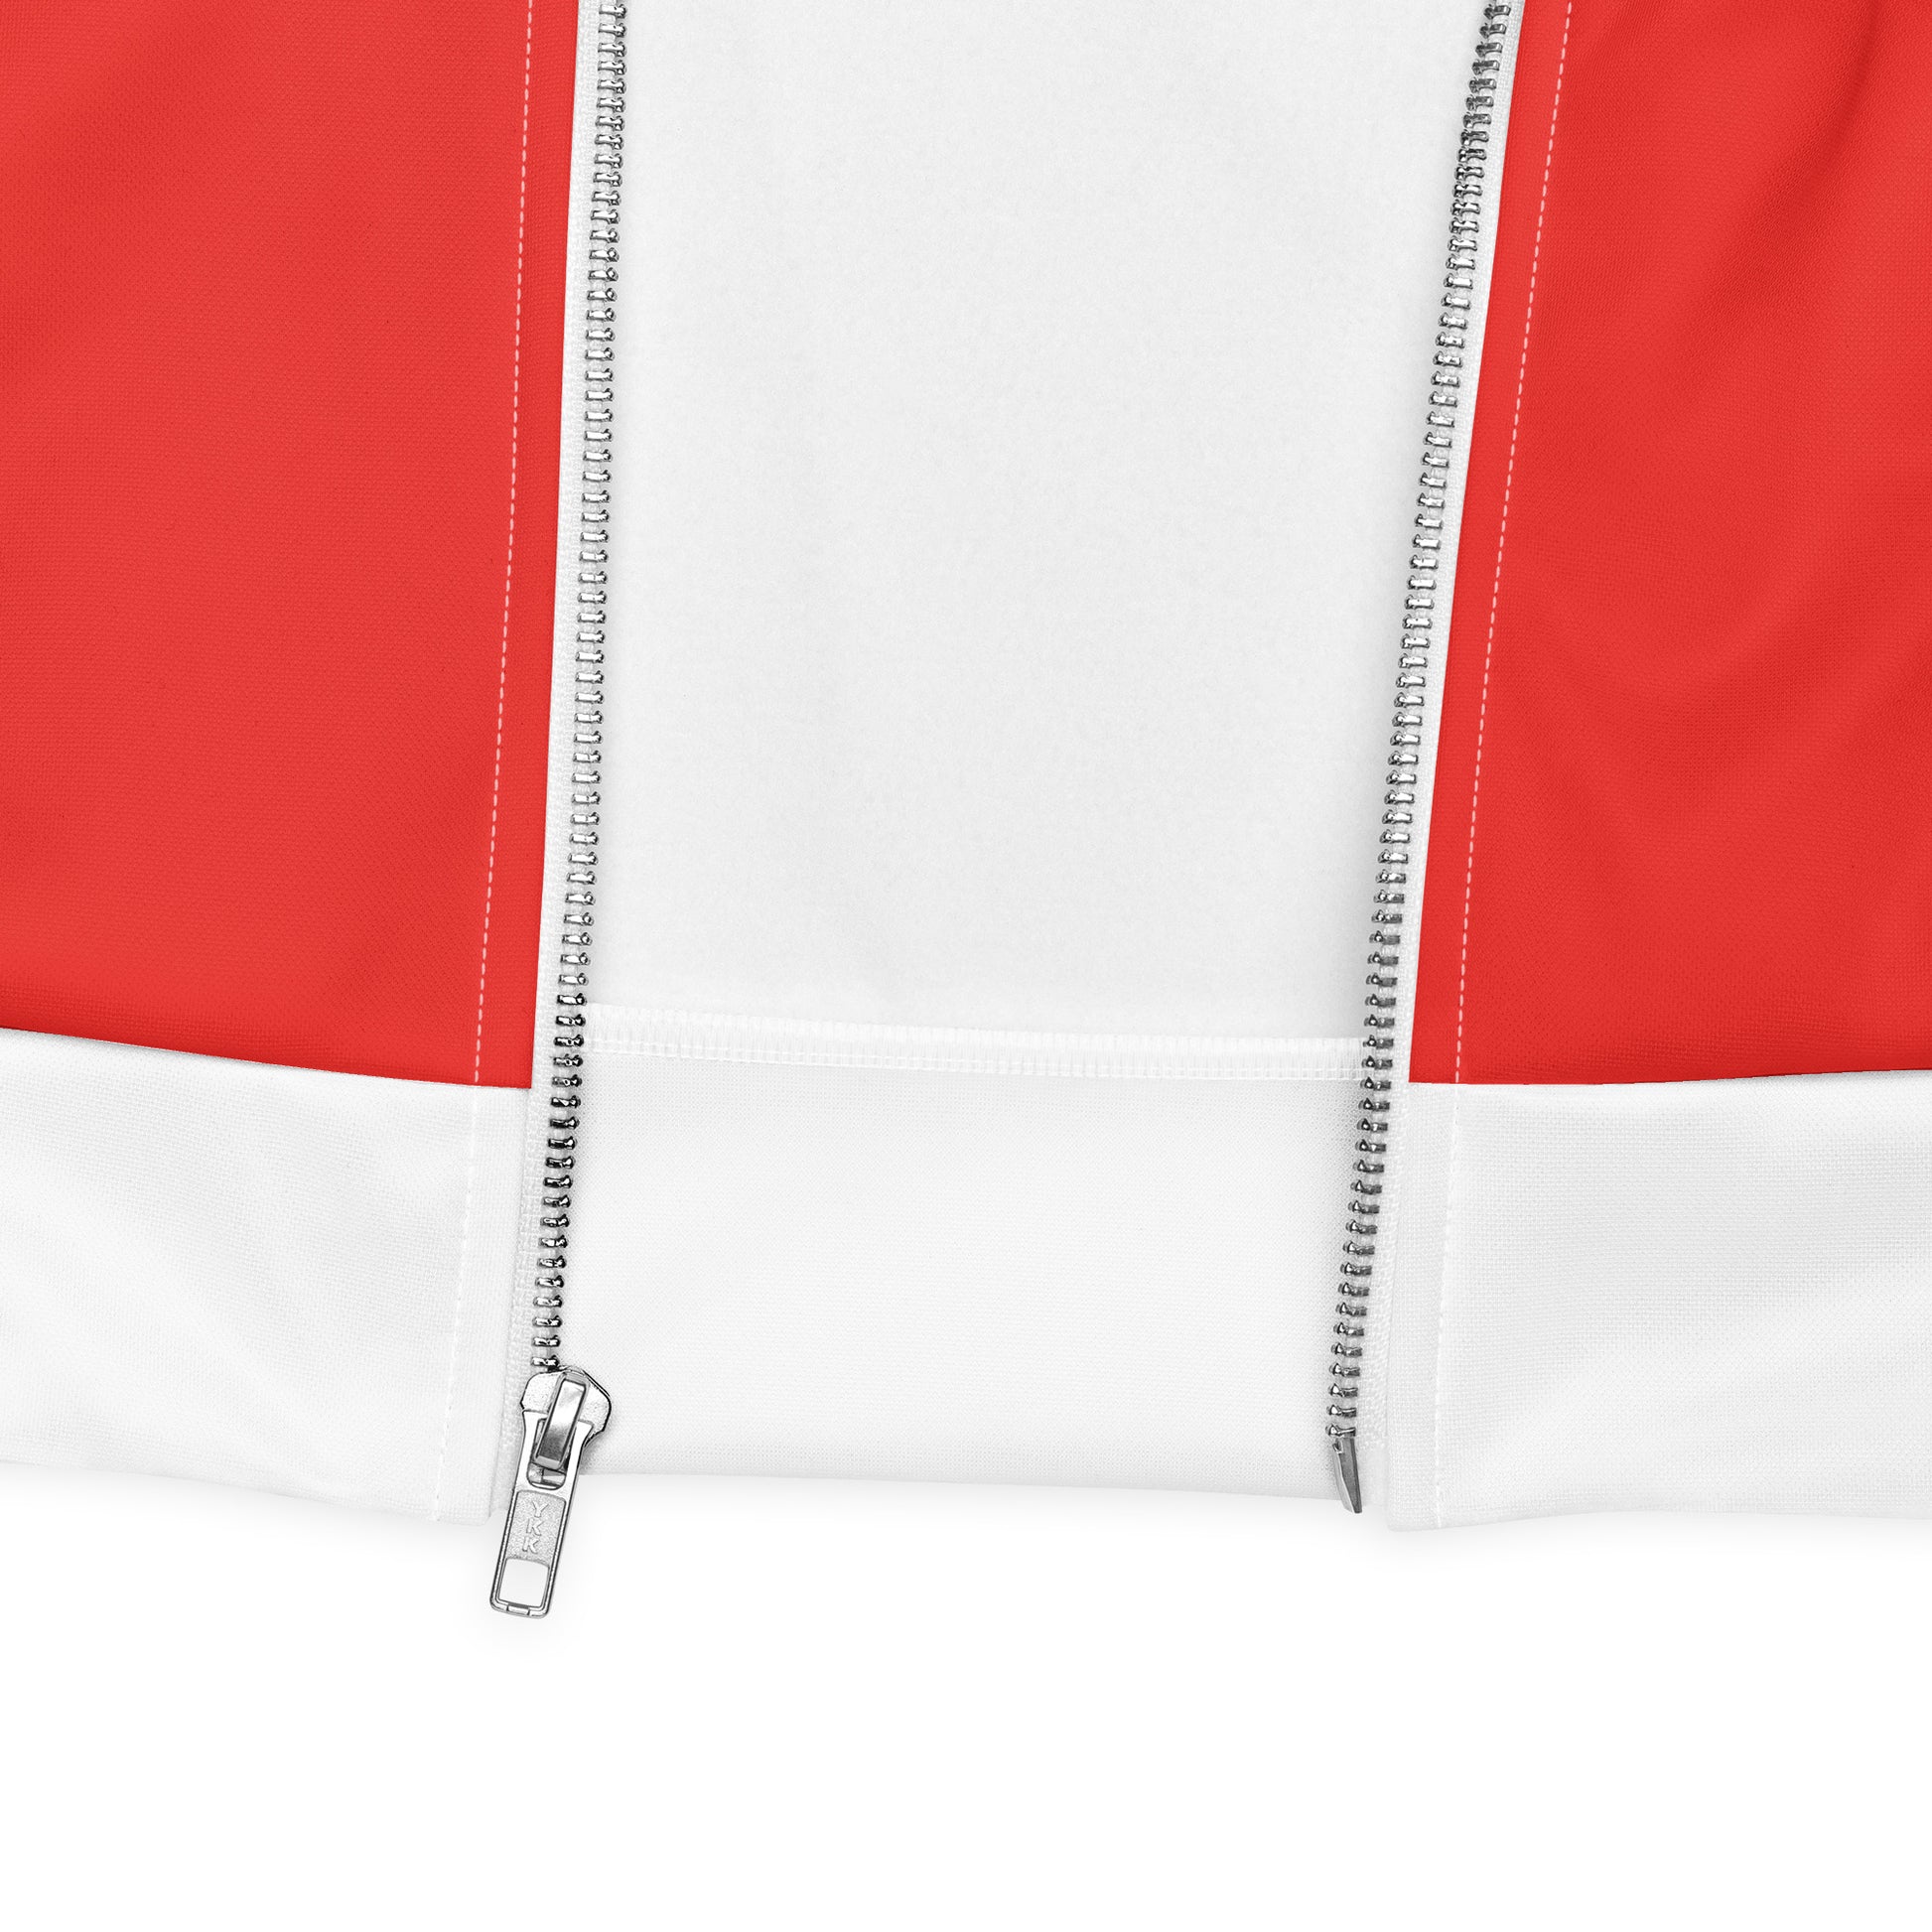 Canada Jacket / Unisex Bomber Jacket / Canada Flag Clothing